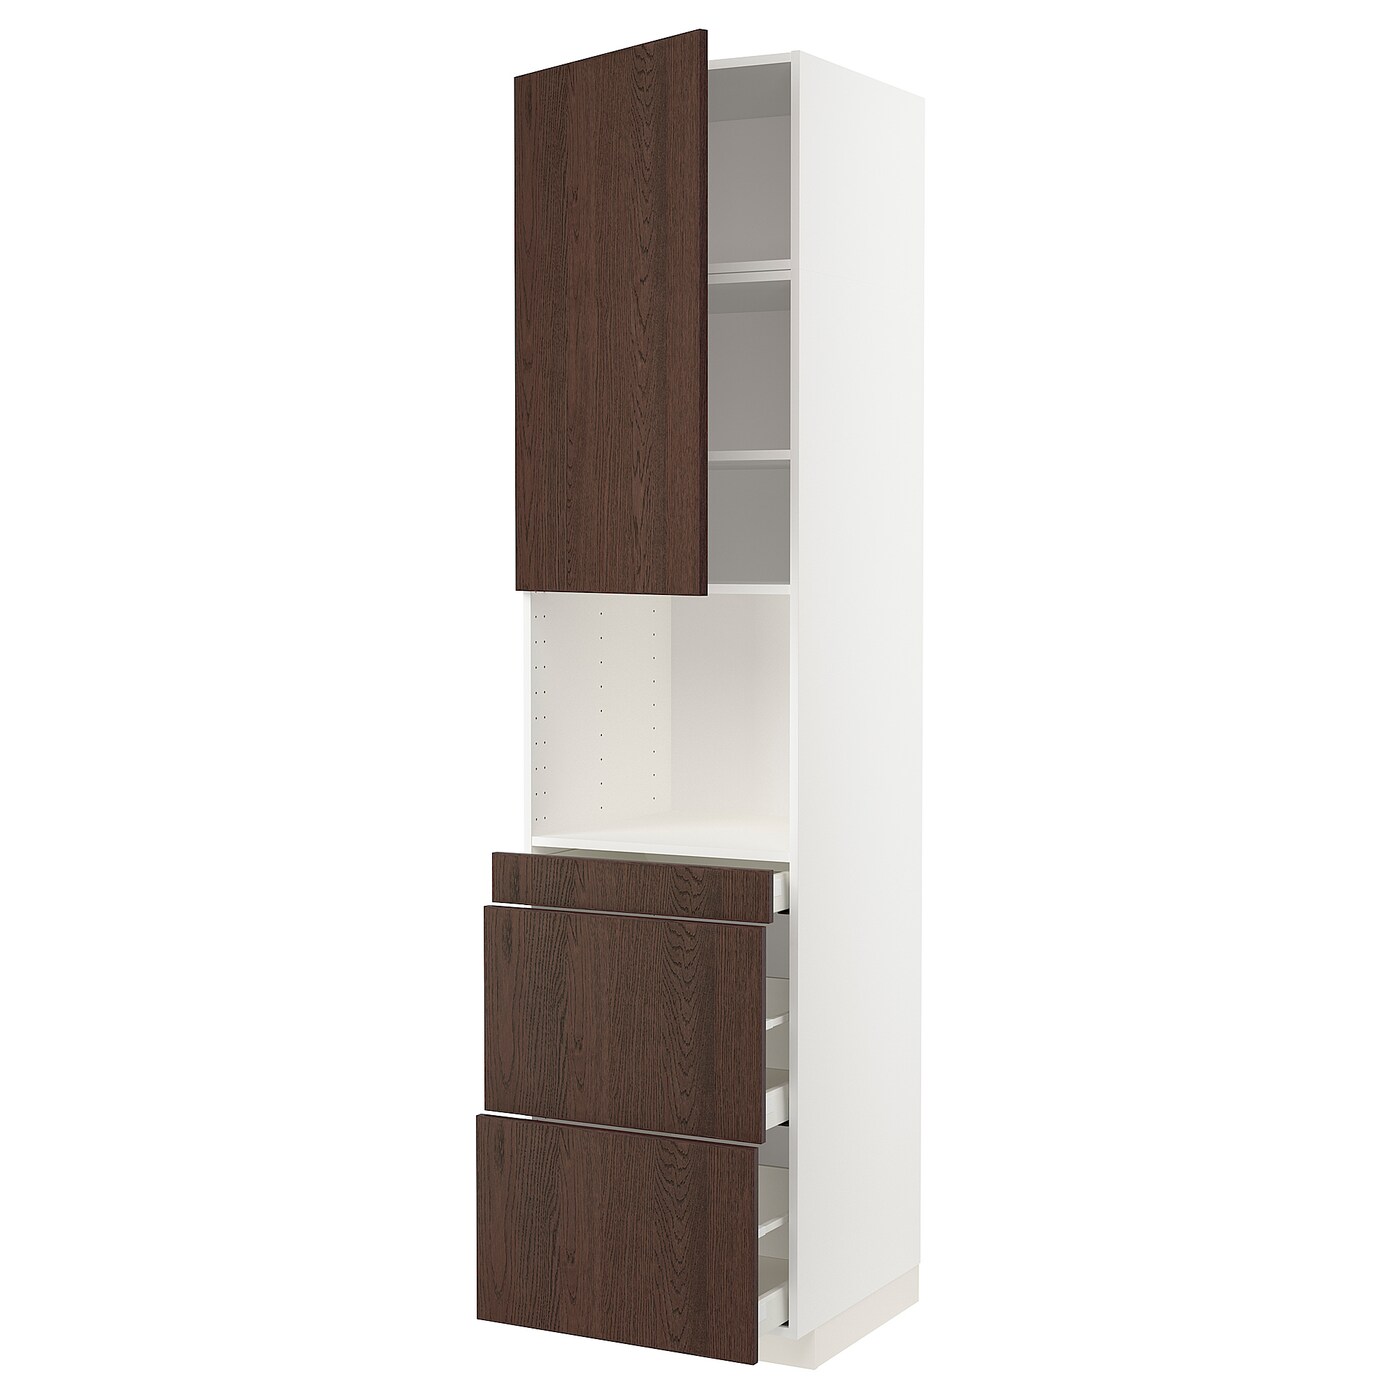 Шкаф - METOD / MAXIMERA  IKEA/ МЕТОД/МАКСИМЕРА  ИКЕА,  248х60 см, коричневый/белый